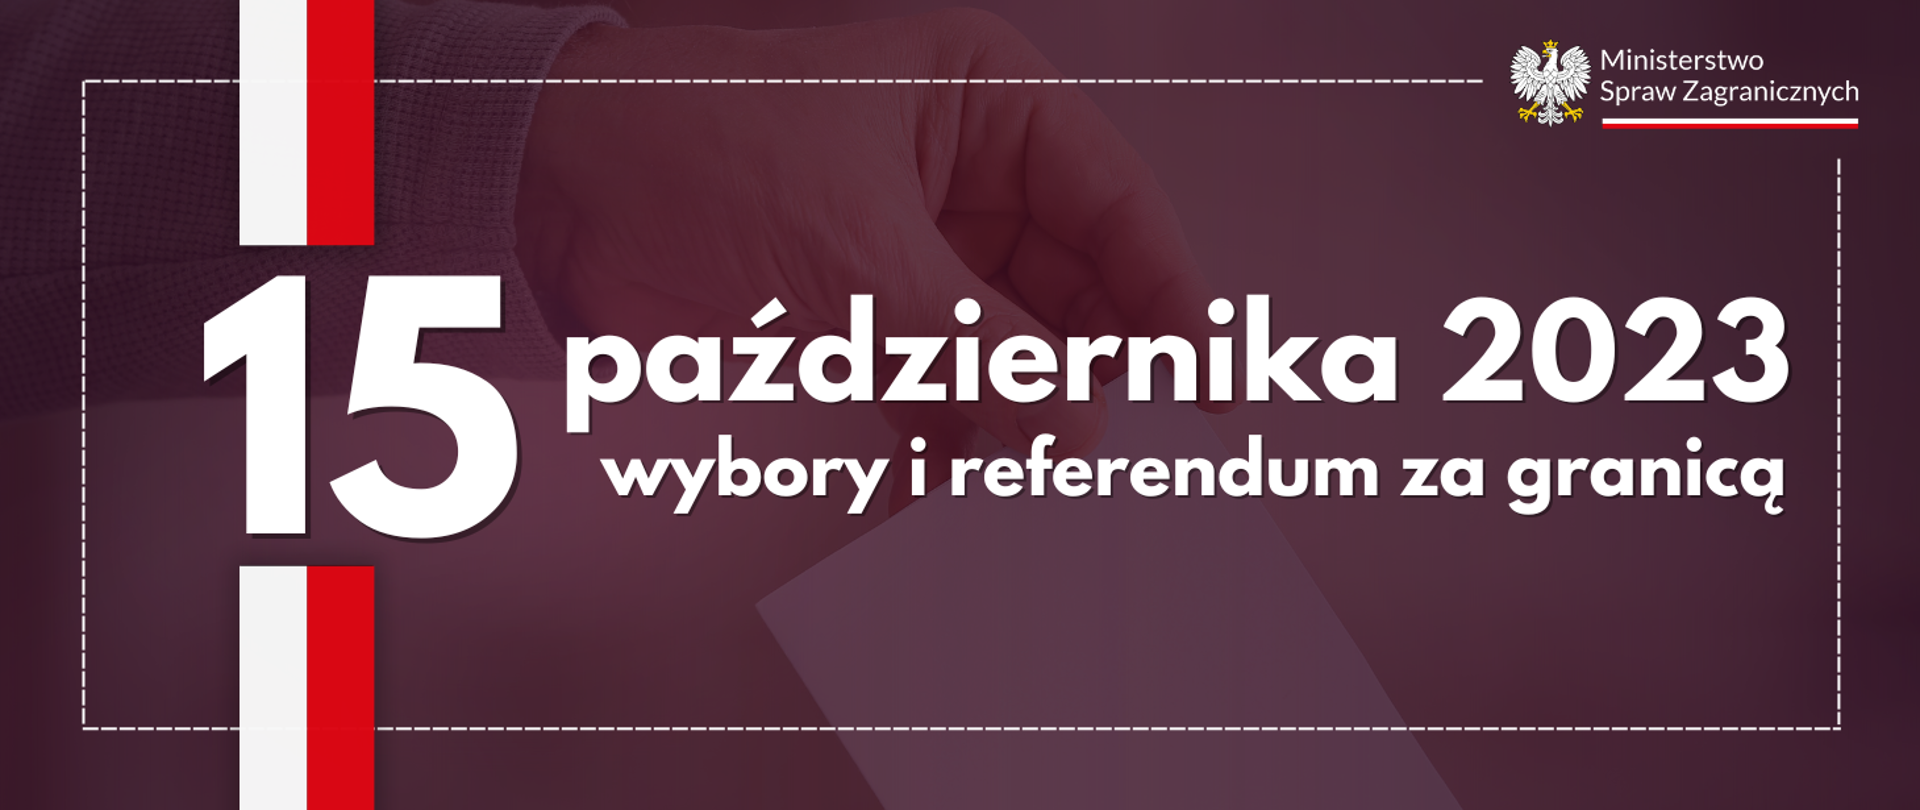 15 października 2023 - wybory i referendum za granicą